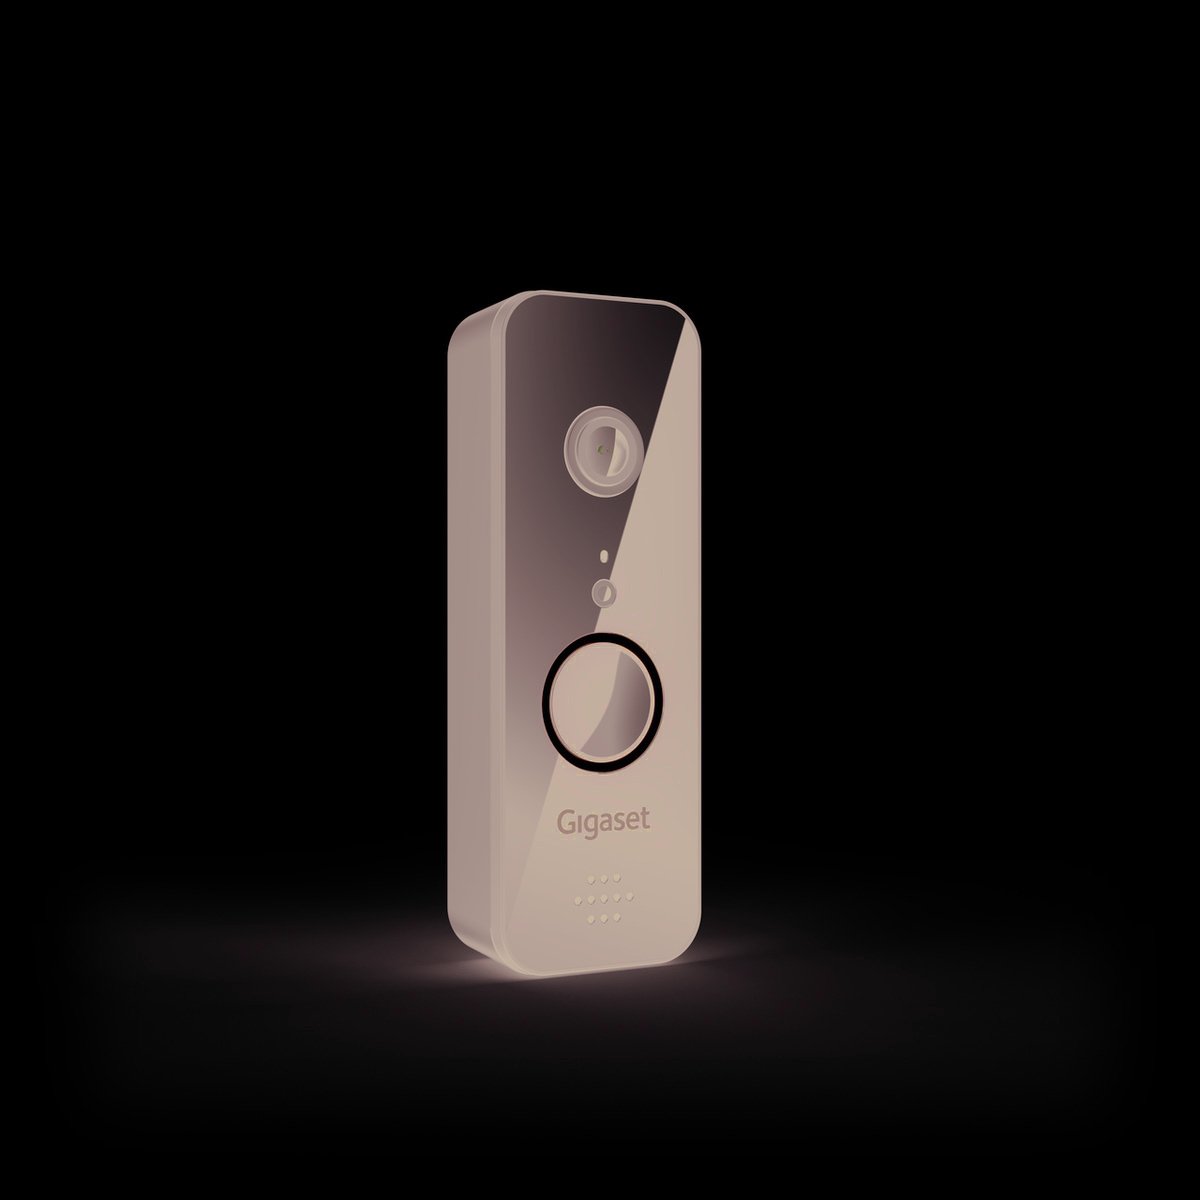 Gigaset smart doorbell: smart doorbell with recording function